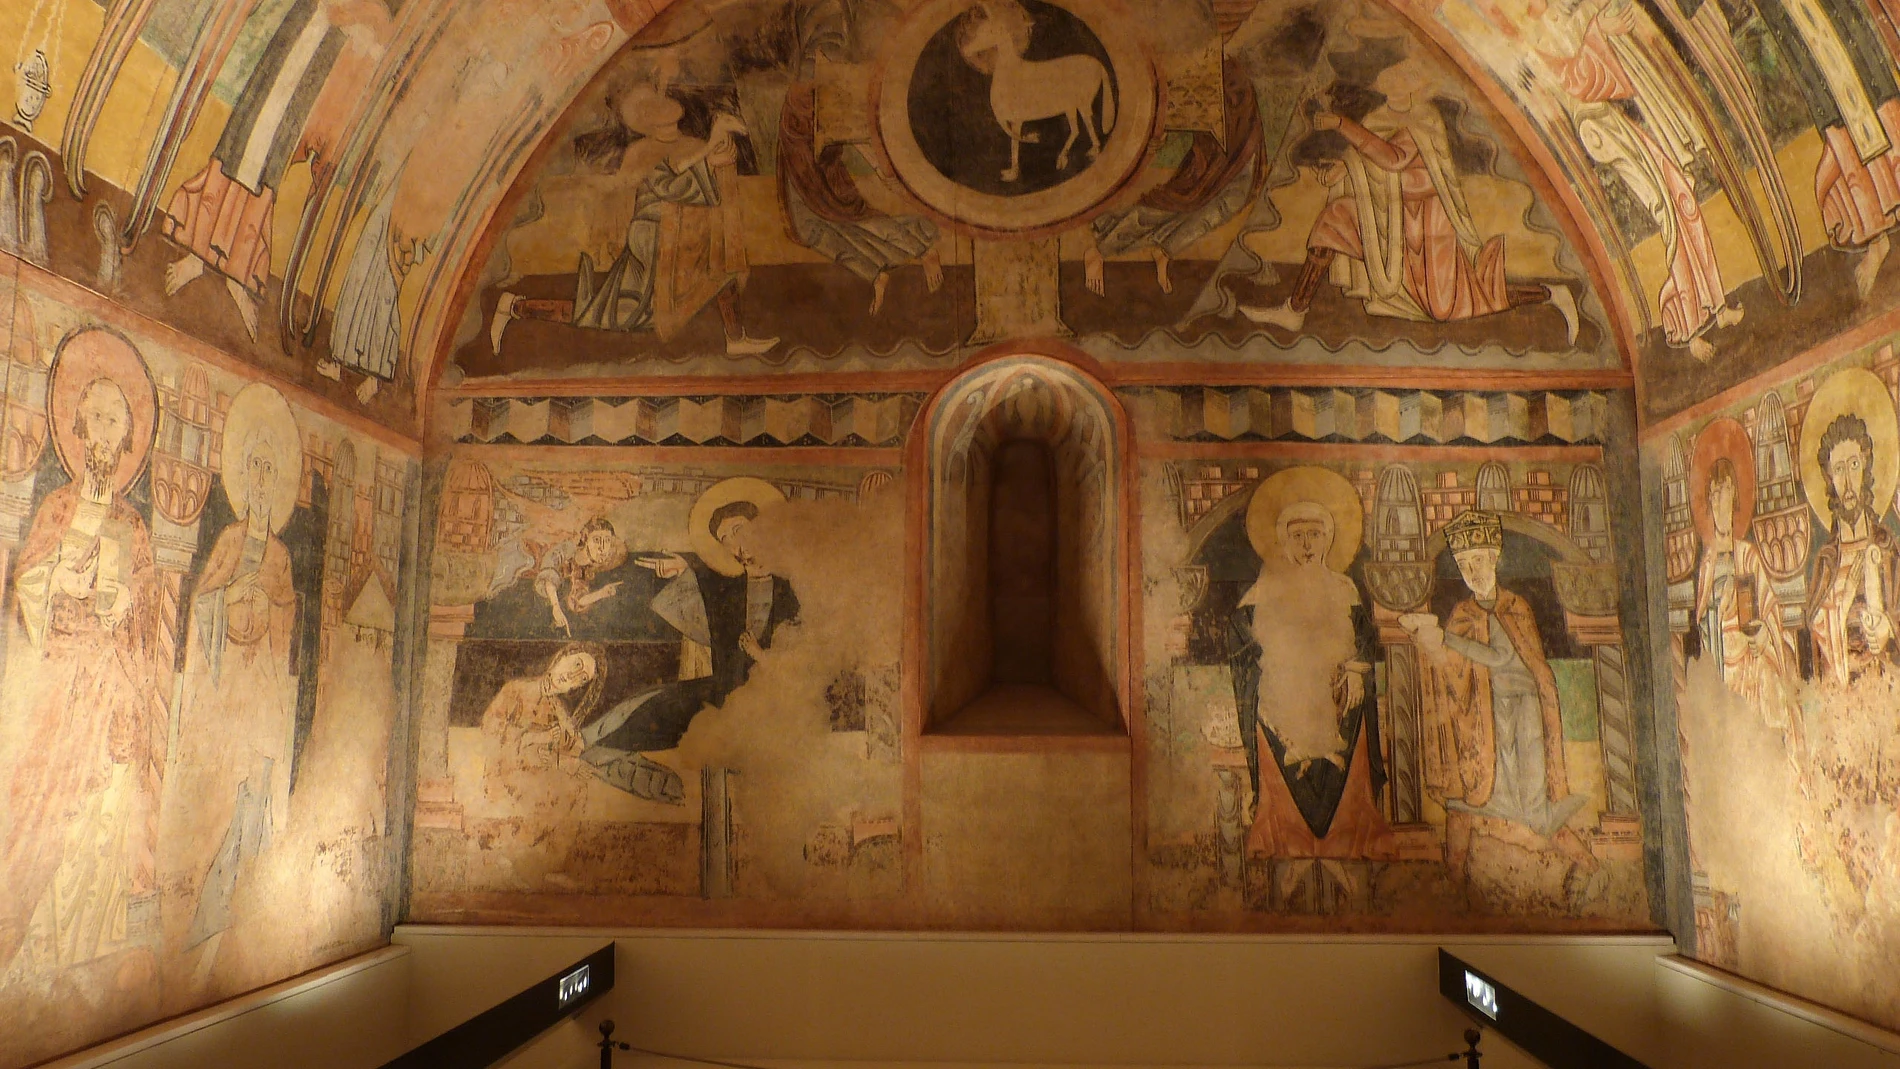 Pintura mural de la ermita de la Vera Cruz de Maderuelo. Anónimo. Siglo XII. Museo Nacional del Prado